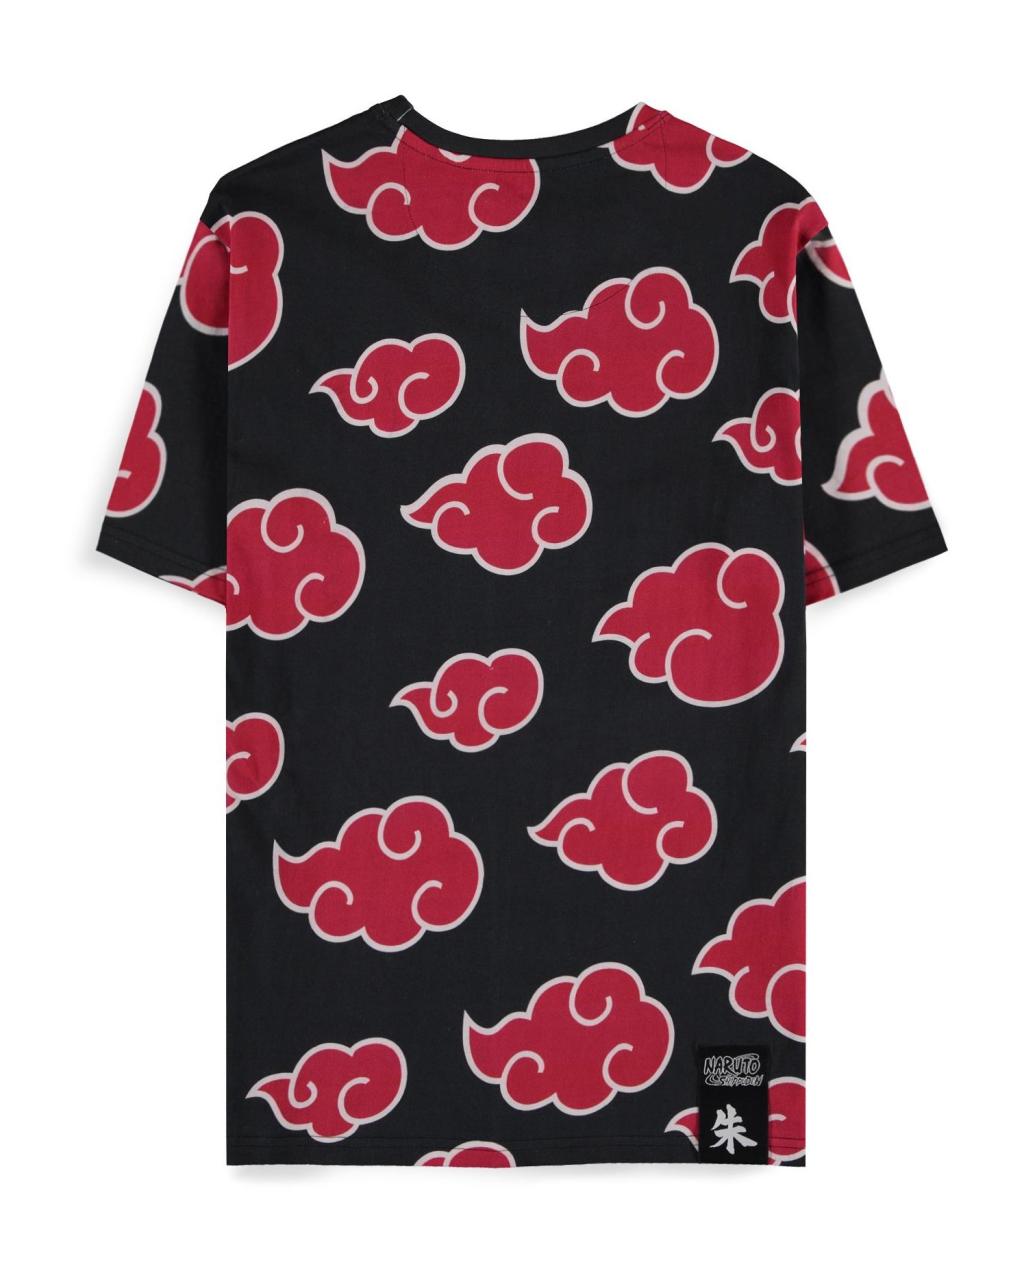 NARUTO SHIPPUDEN - Itachi Clouds - Men's T-shirt (S)